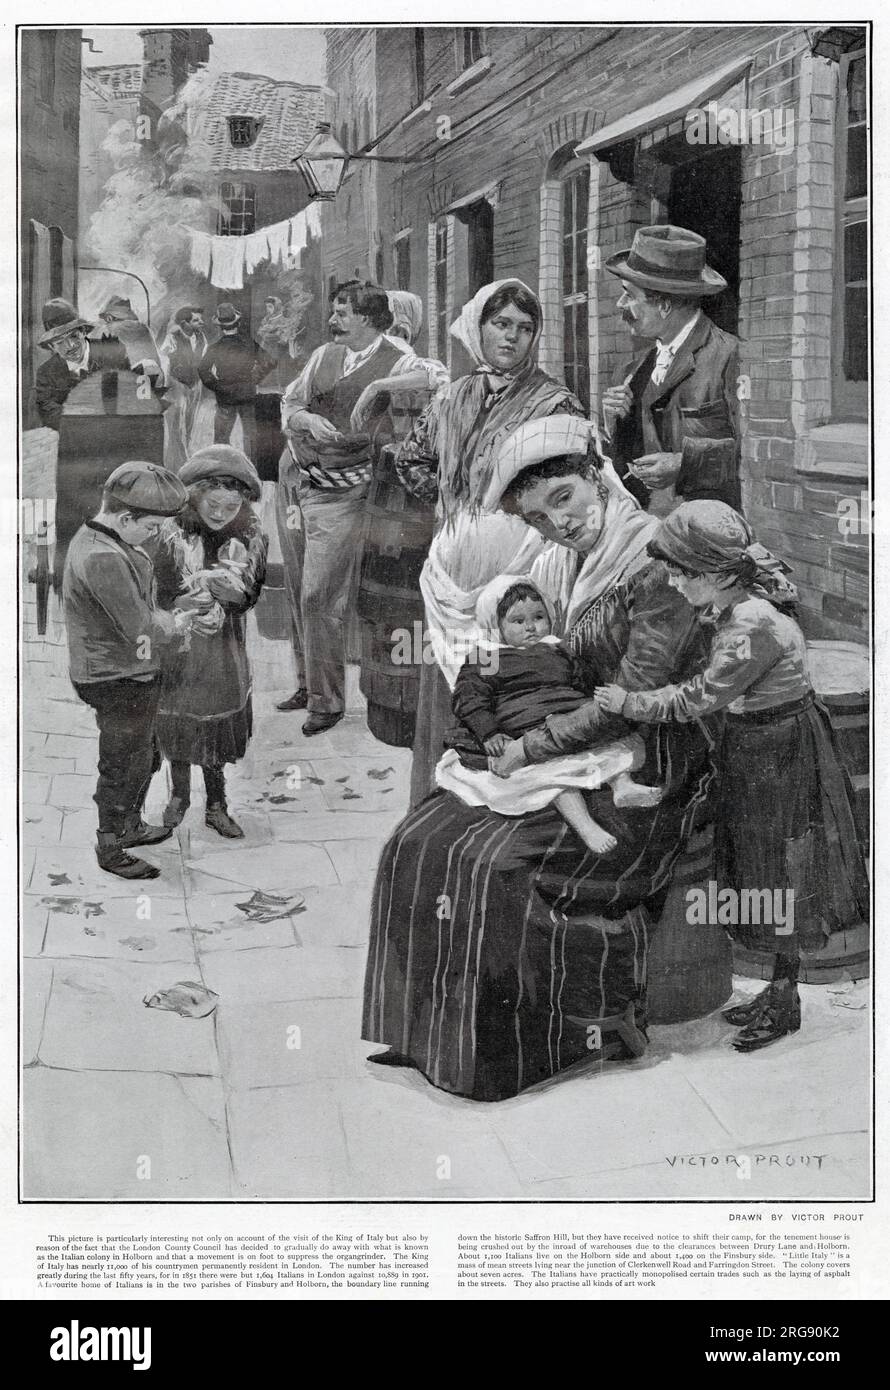 Malerische Illustration einer italienischen Gemeinde, die in der Leather Lane in London lebt. Der Bezirksrat hatte damals beschlossen, dass sie nach und nach eine Kolonie italienischer Menschen, die in Holborn und Finsbury zusammenleben, wegen Überbelegung beseitigen würden. Stockfoto